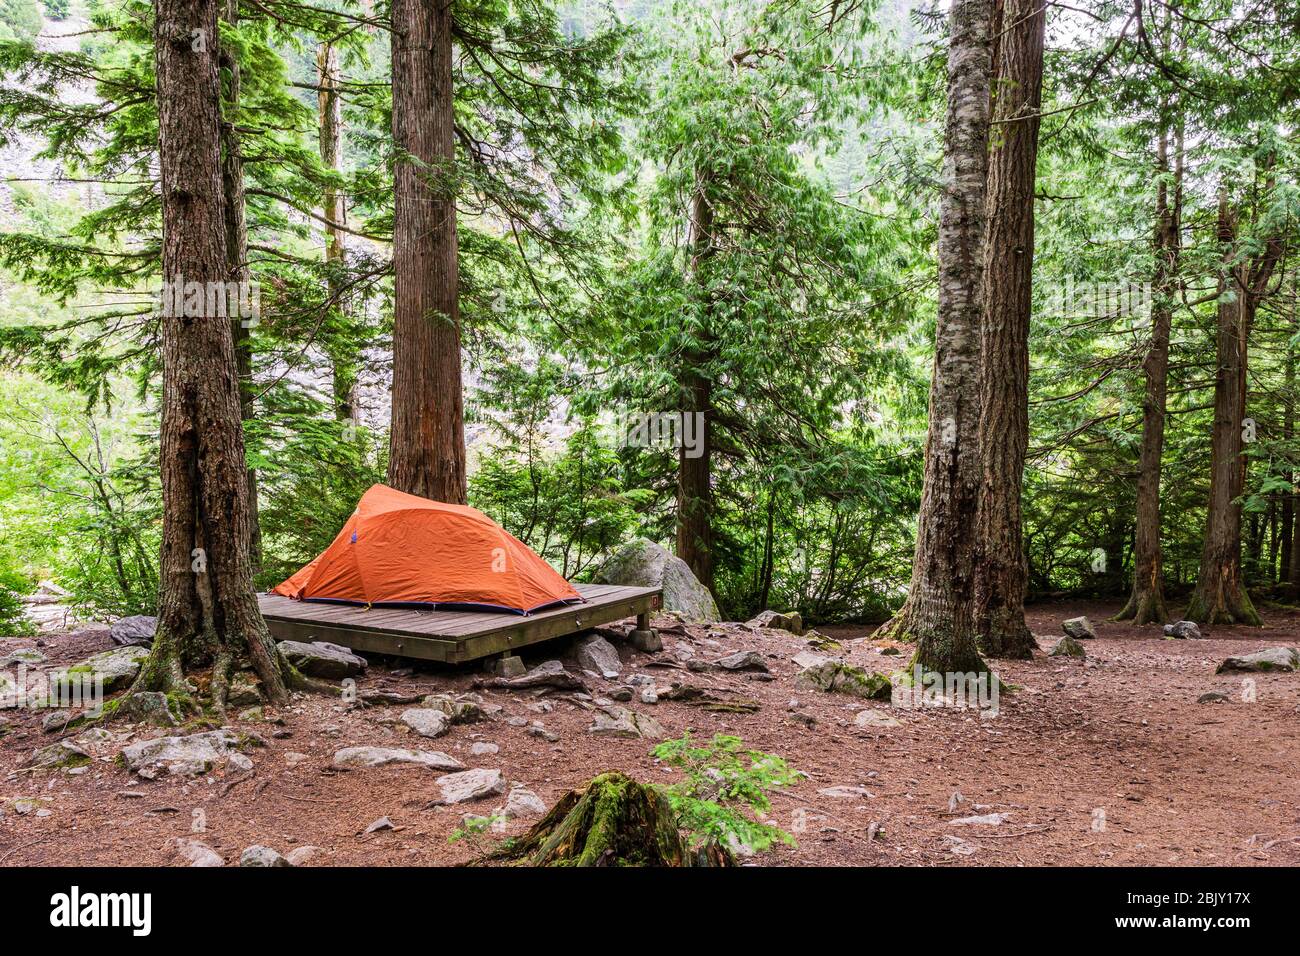 Campingplatz mit Zelt in der Nähe von Wanderweg, der entlang eines Waldes in den Bergen von british columbia kanada läuft. Stockfoto